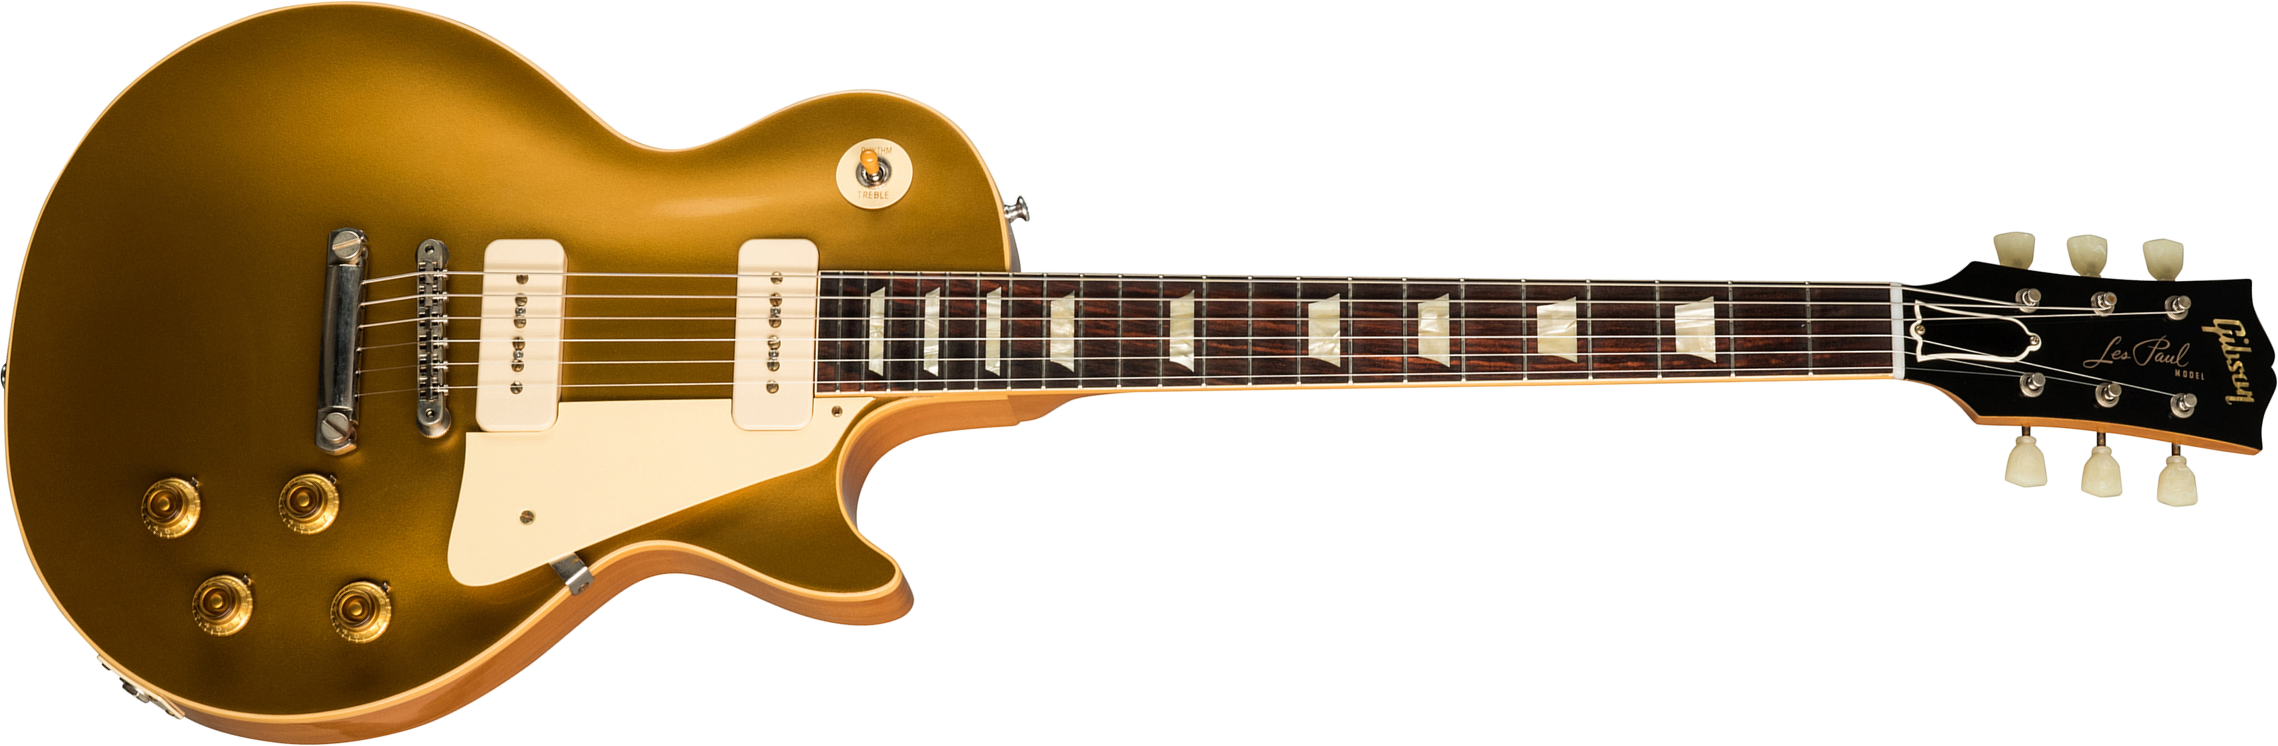 Gibson Custom Shop Les Paul Goldtop 1956 Reissue 2019 2p90 Ht Rw - Vos Double Gold - Guitarra eléctrica de corte único. - Main picture